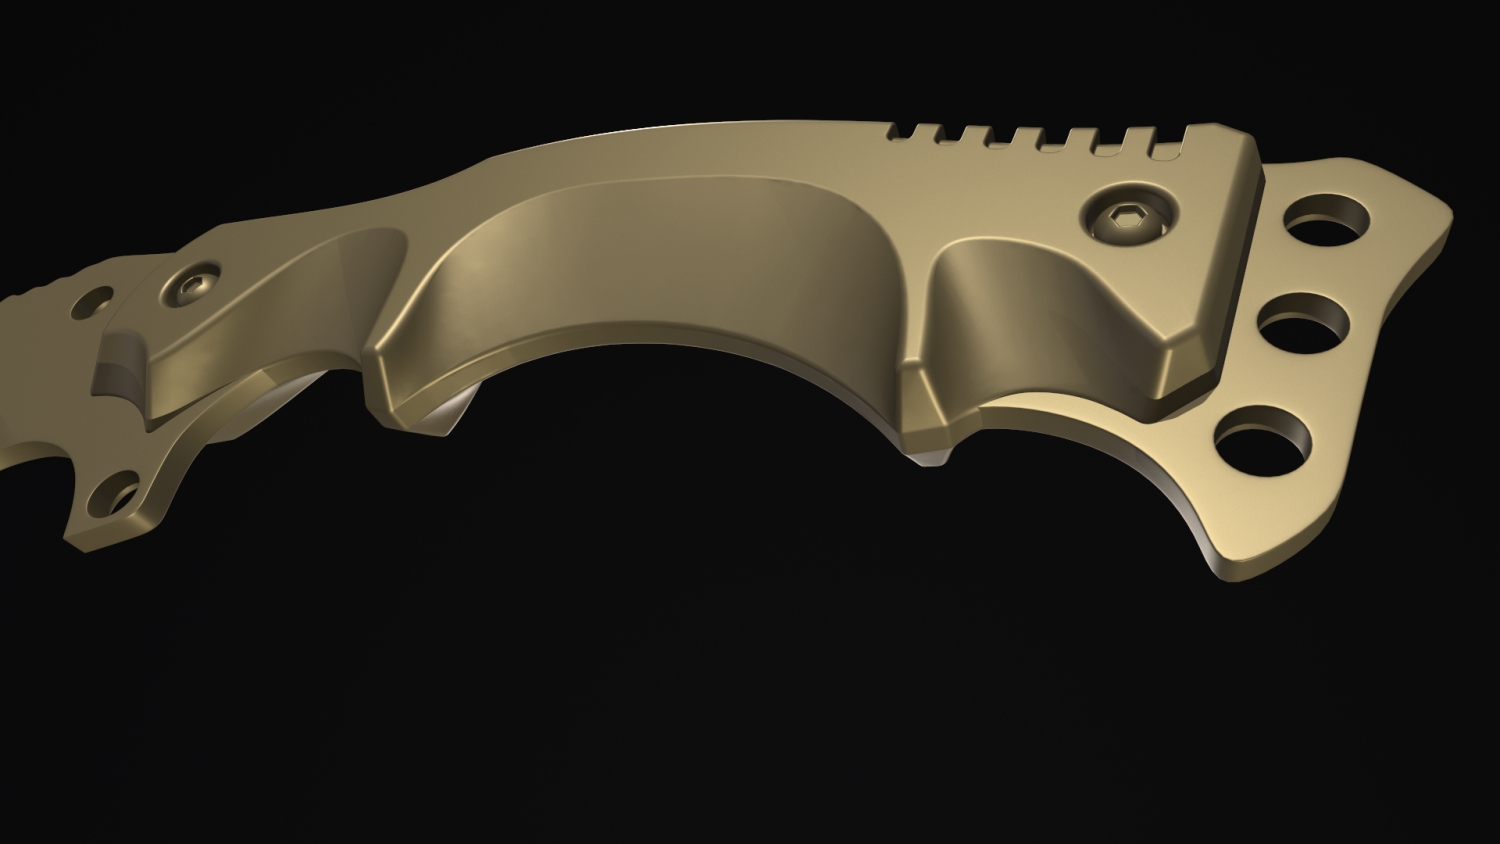 krausers knife 3D Model in Melee 3DExport